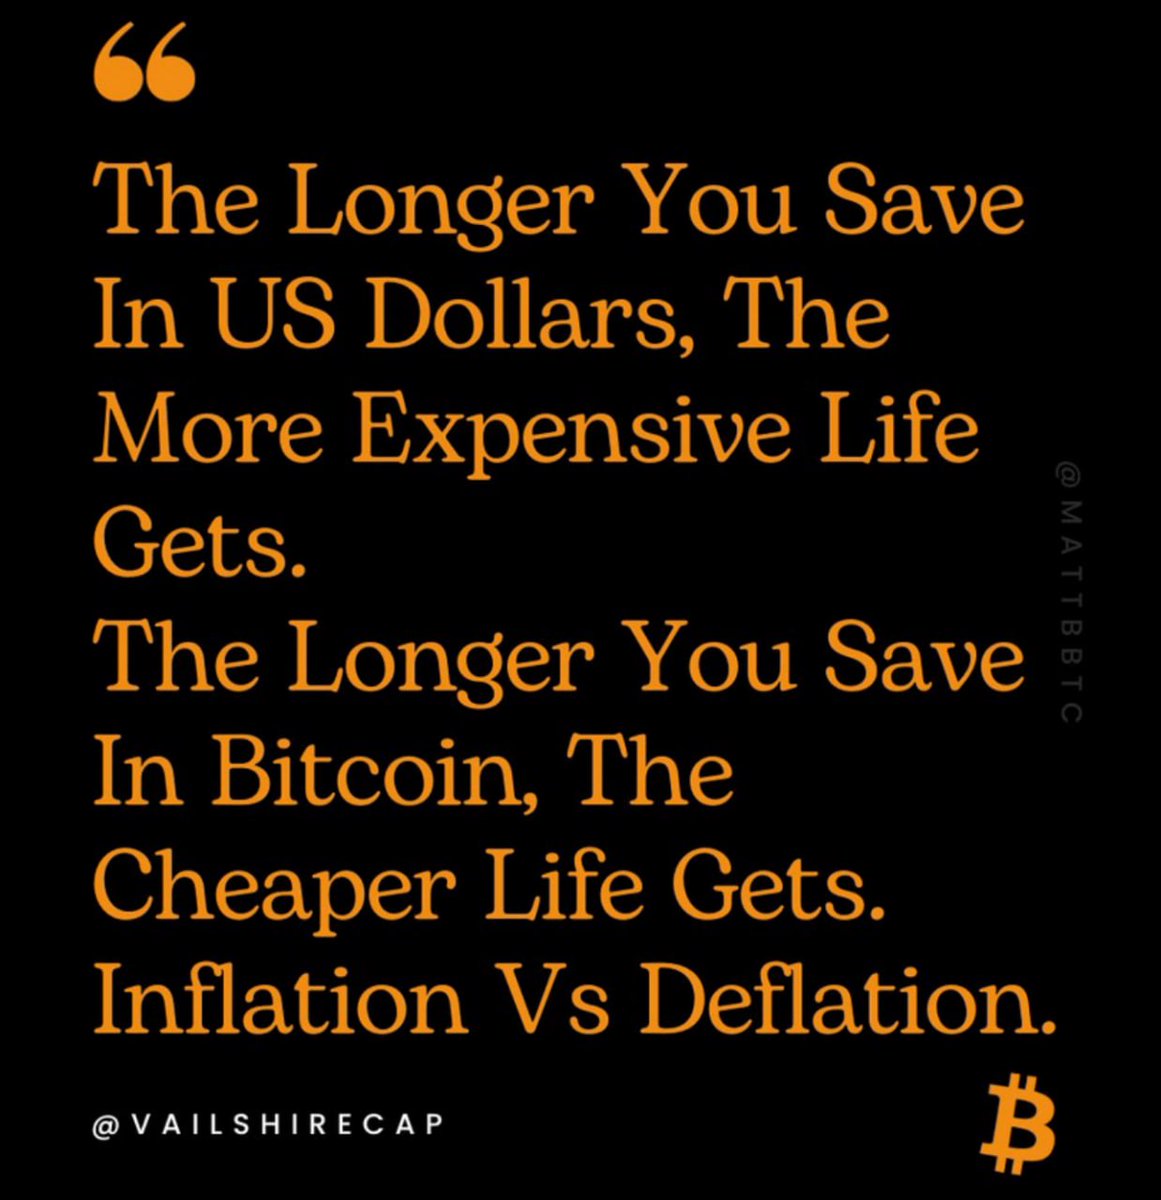 #Bitcoin is savings.